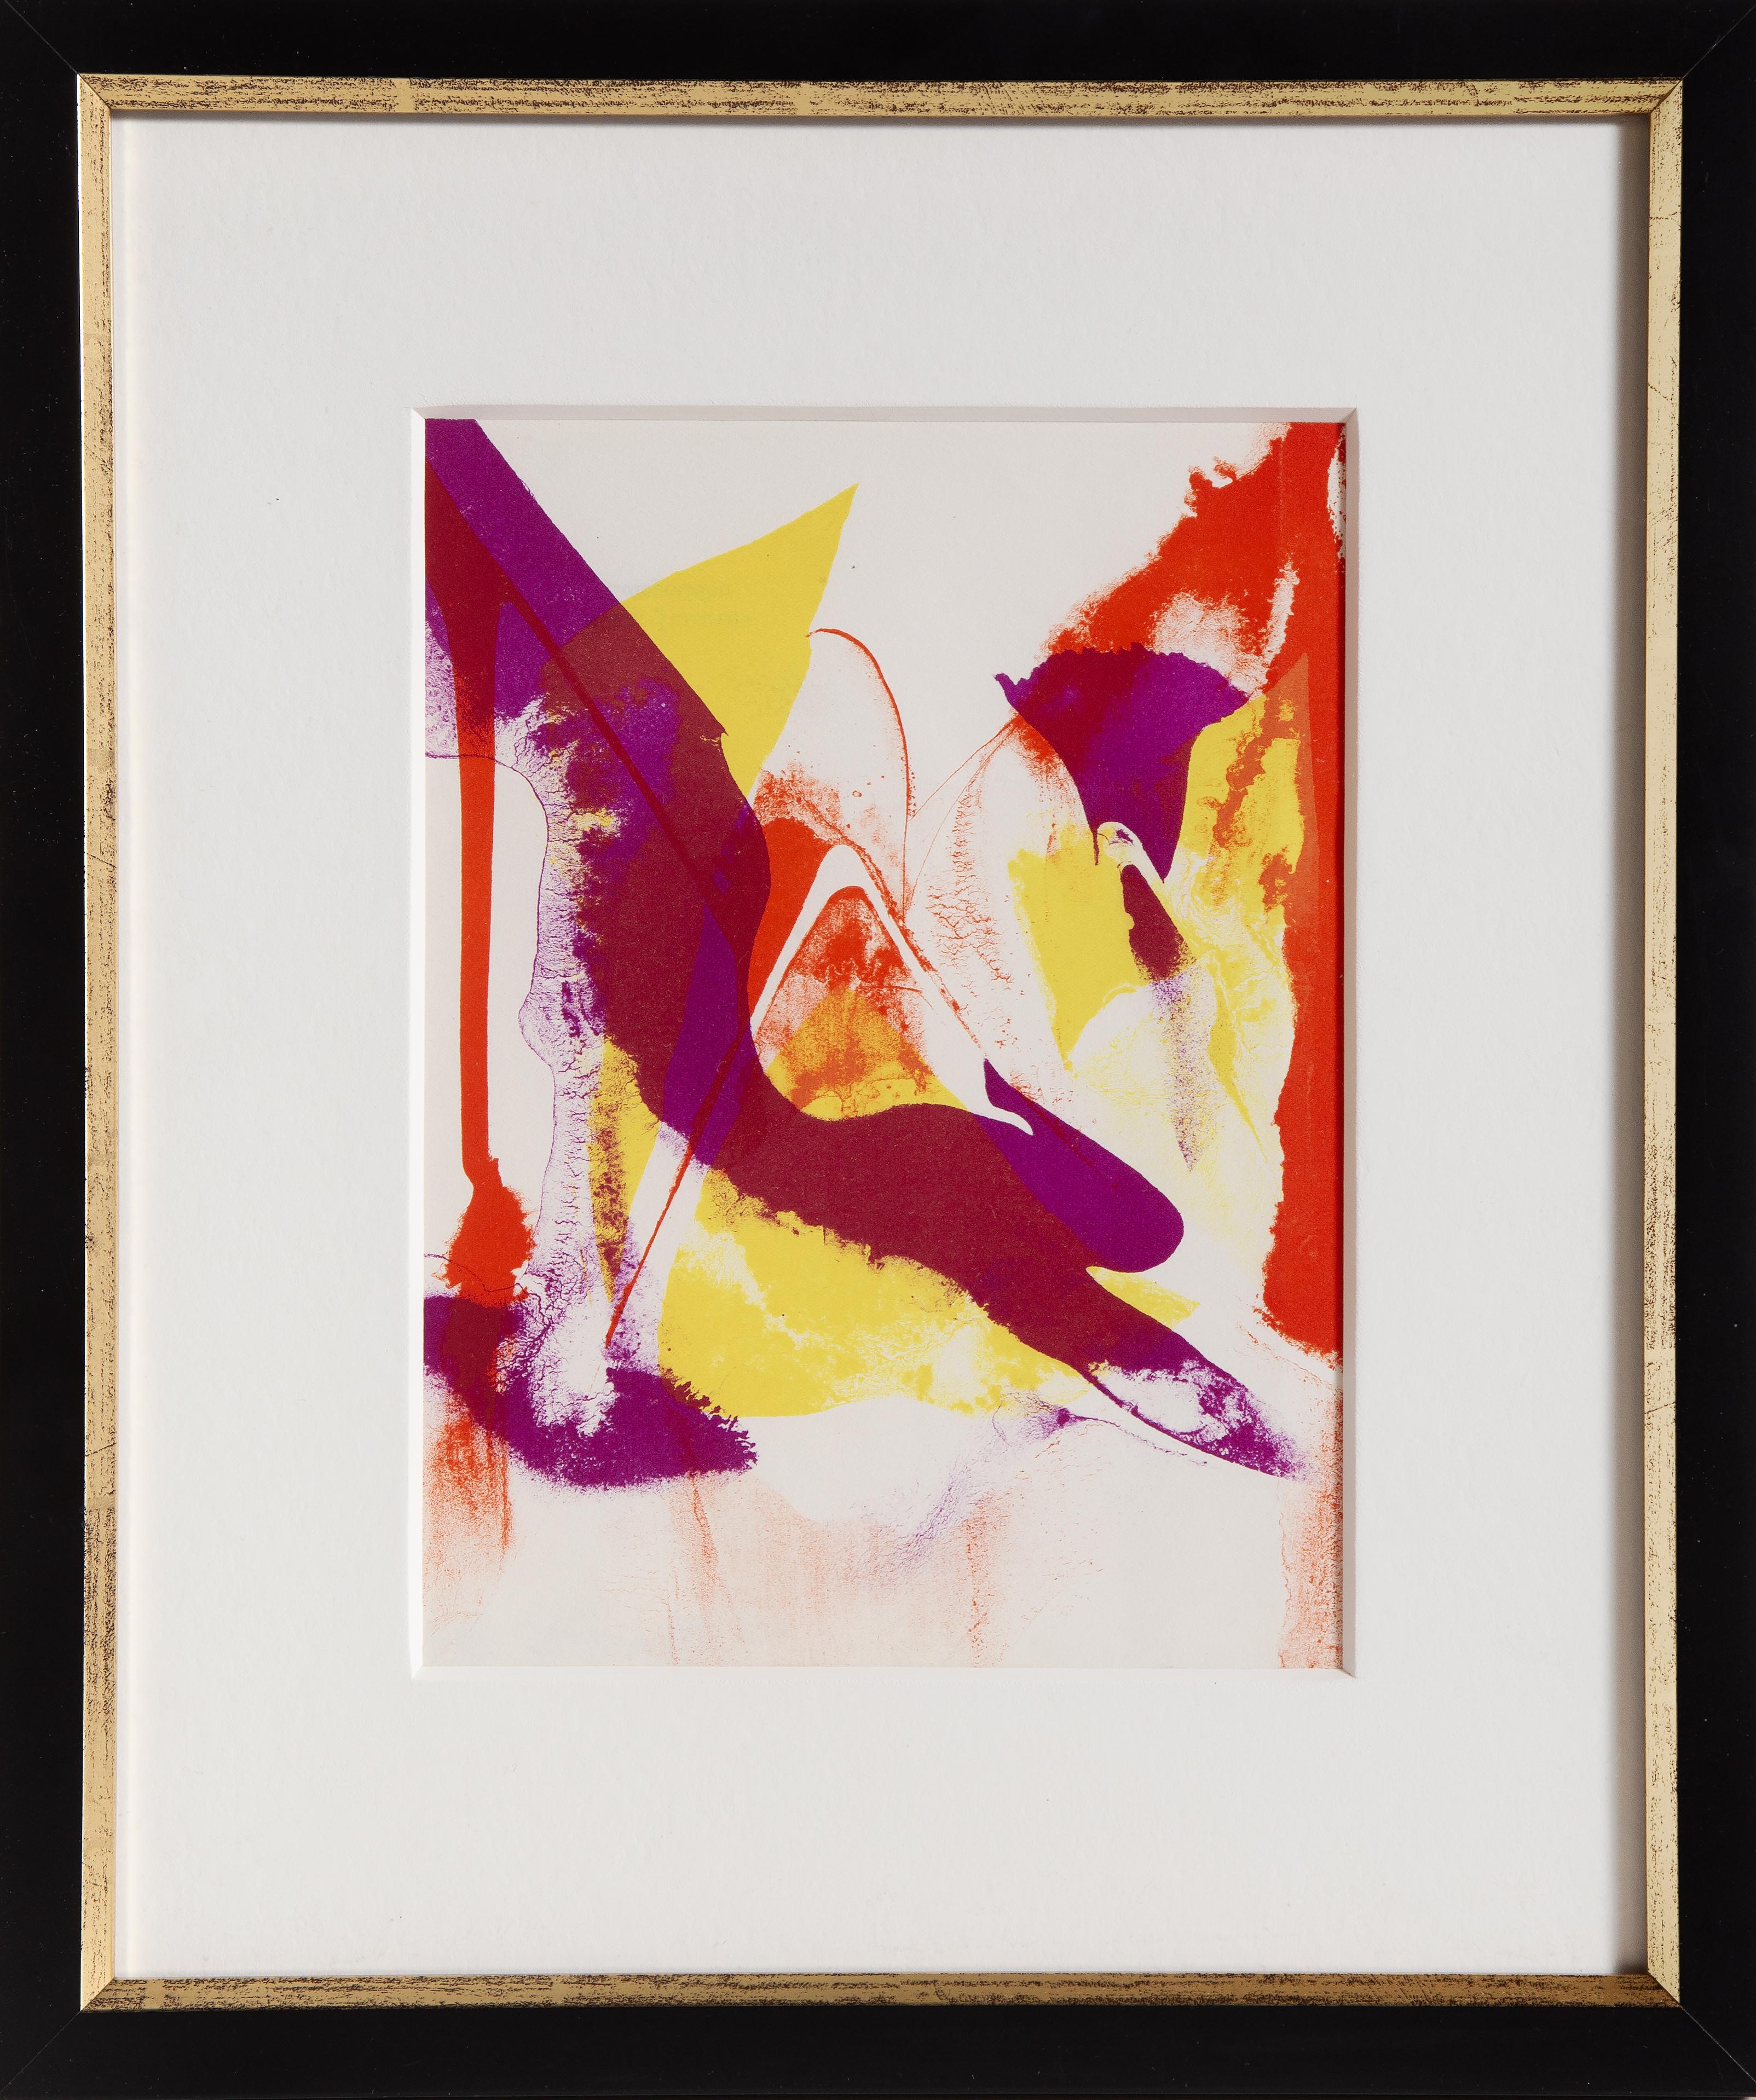 Composition en violet, rouge et jaune
Paul Jenkins, Américain (1923-2012)
Portfolio : Lithographies de l'Atelier Mourlot
Date : 1966
Lithographie sur Arches (non signée)
Edition de 1000 exemplaires
Taille : 9.75 x 7.25 in. (24.77 x 18.42 cm)
Taille